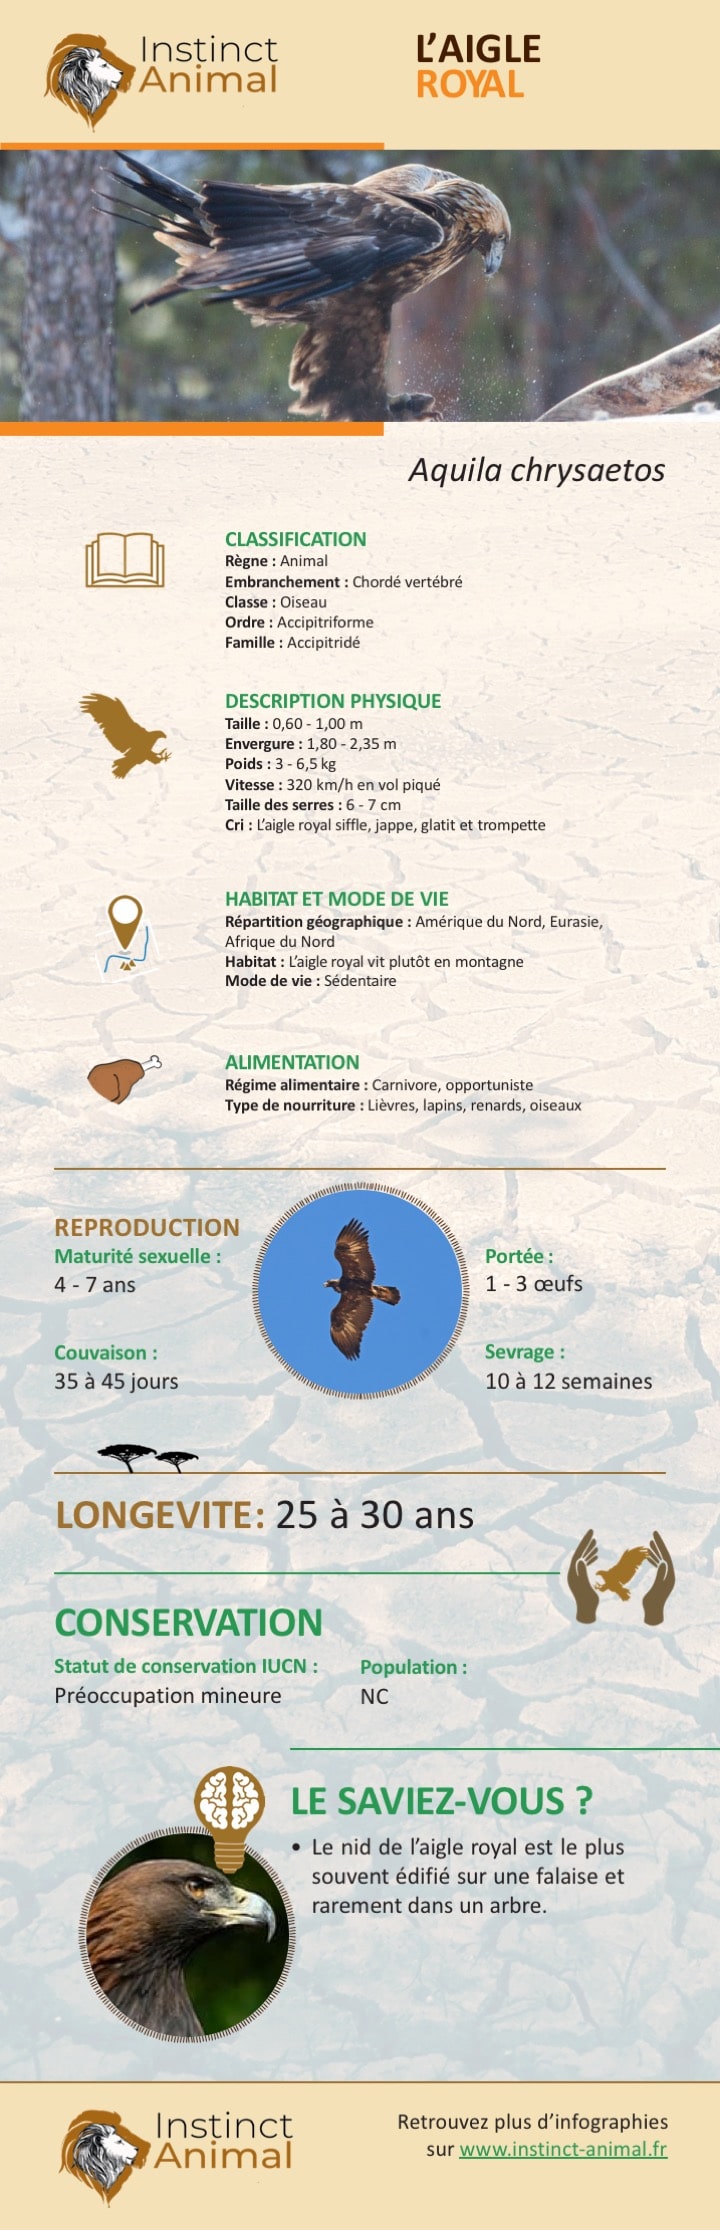 Description de l'aigle royal - Infographie - Instinct Animal